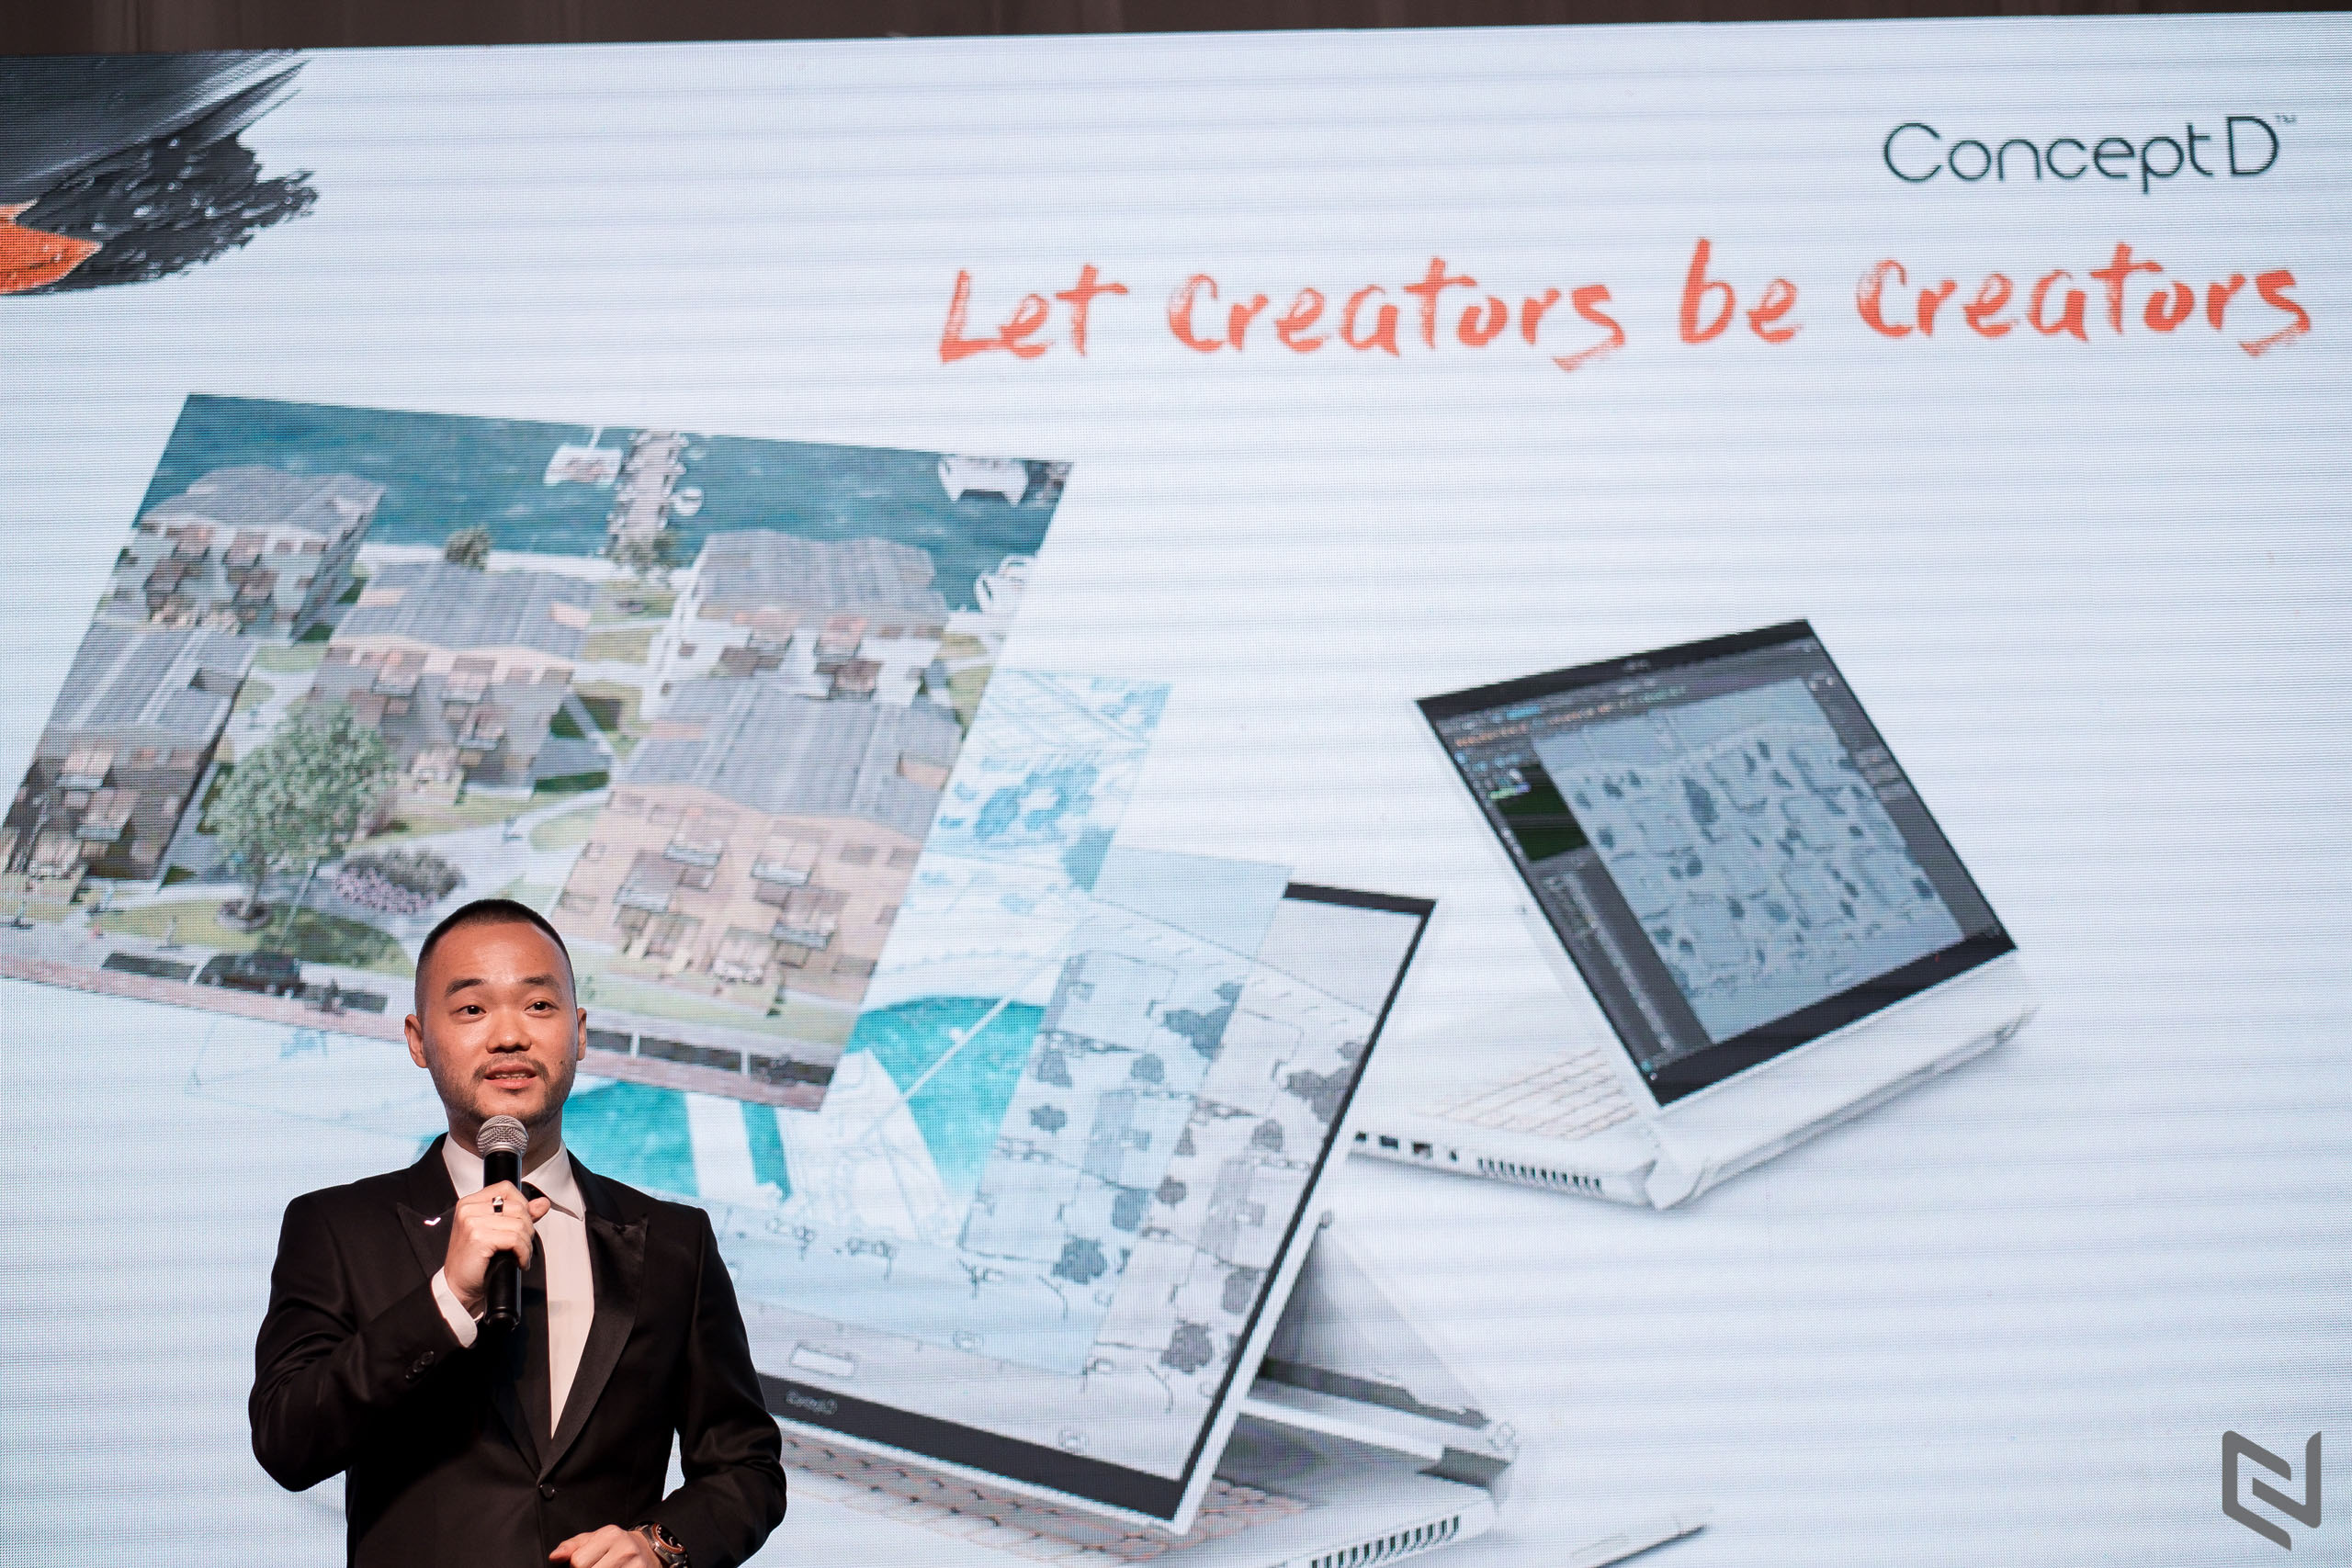 Acer ra mắt dòng sản phẩm ConceptD dành cho các nhà sáng tạo trong khuôn khổ triển lãm nghệ thuật “Sáng tạo nguyên bản”